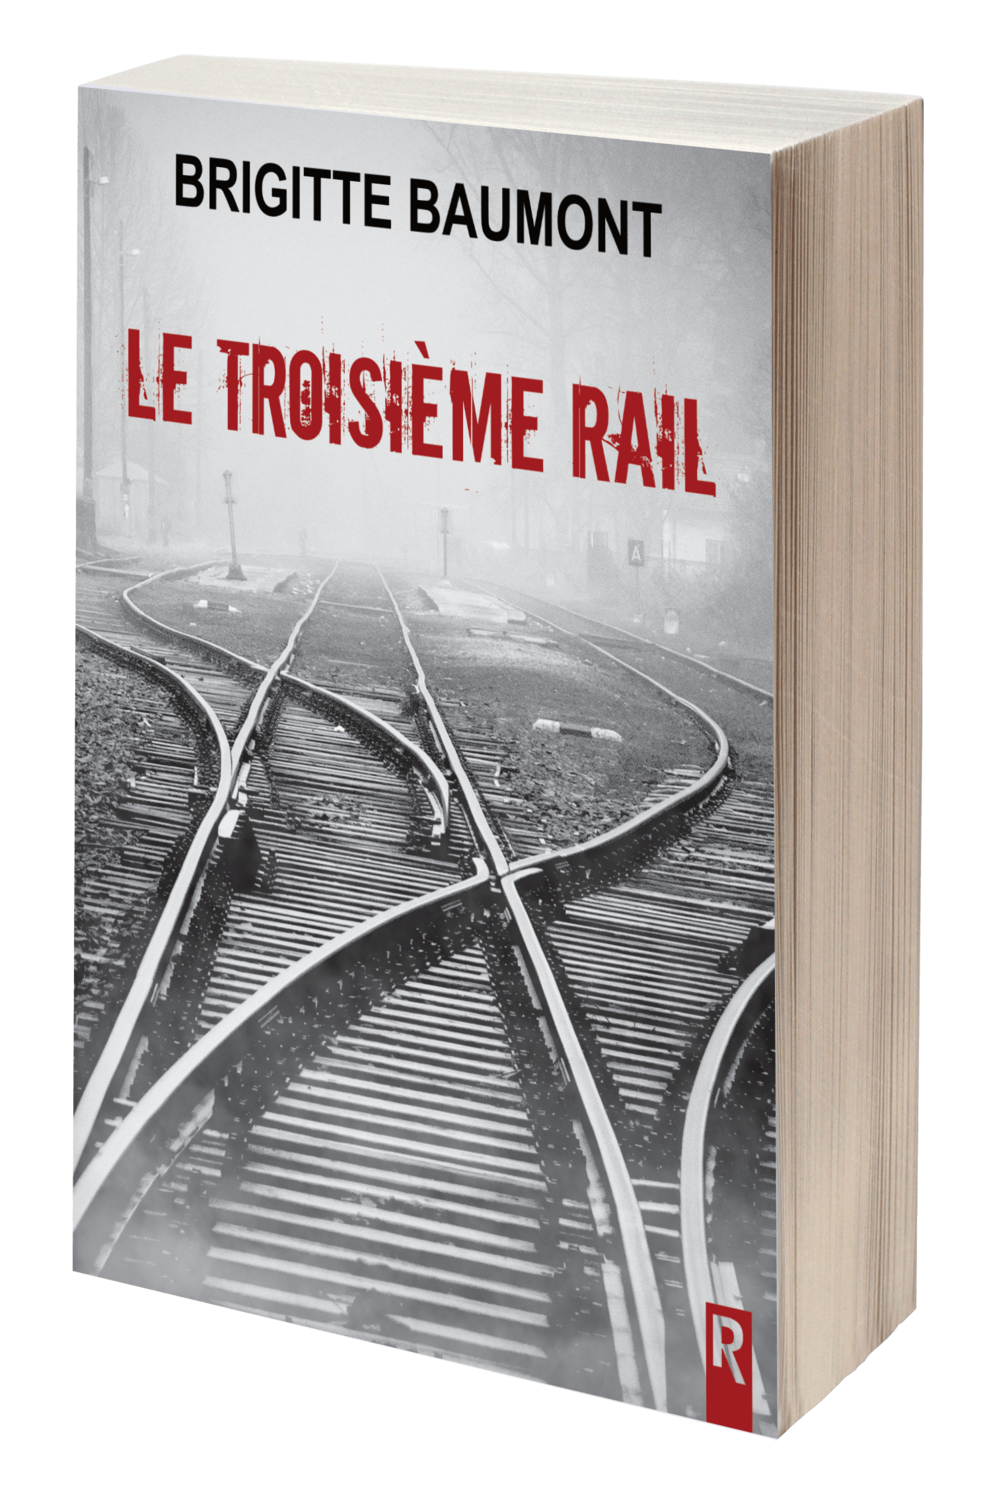 Le troisième rail - Brigitte Baumont